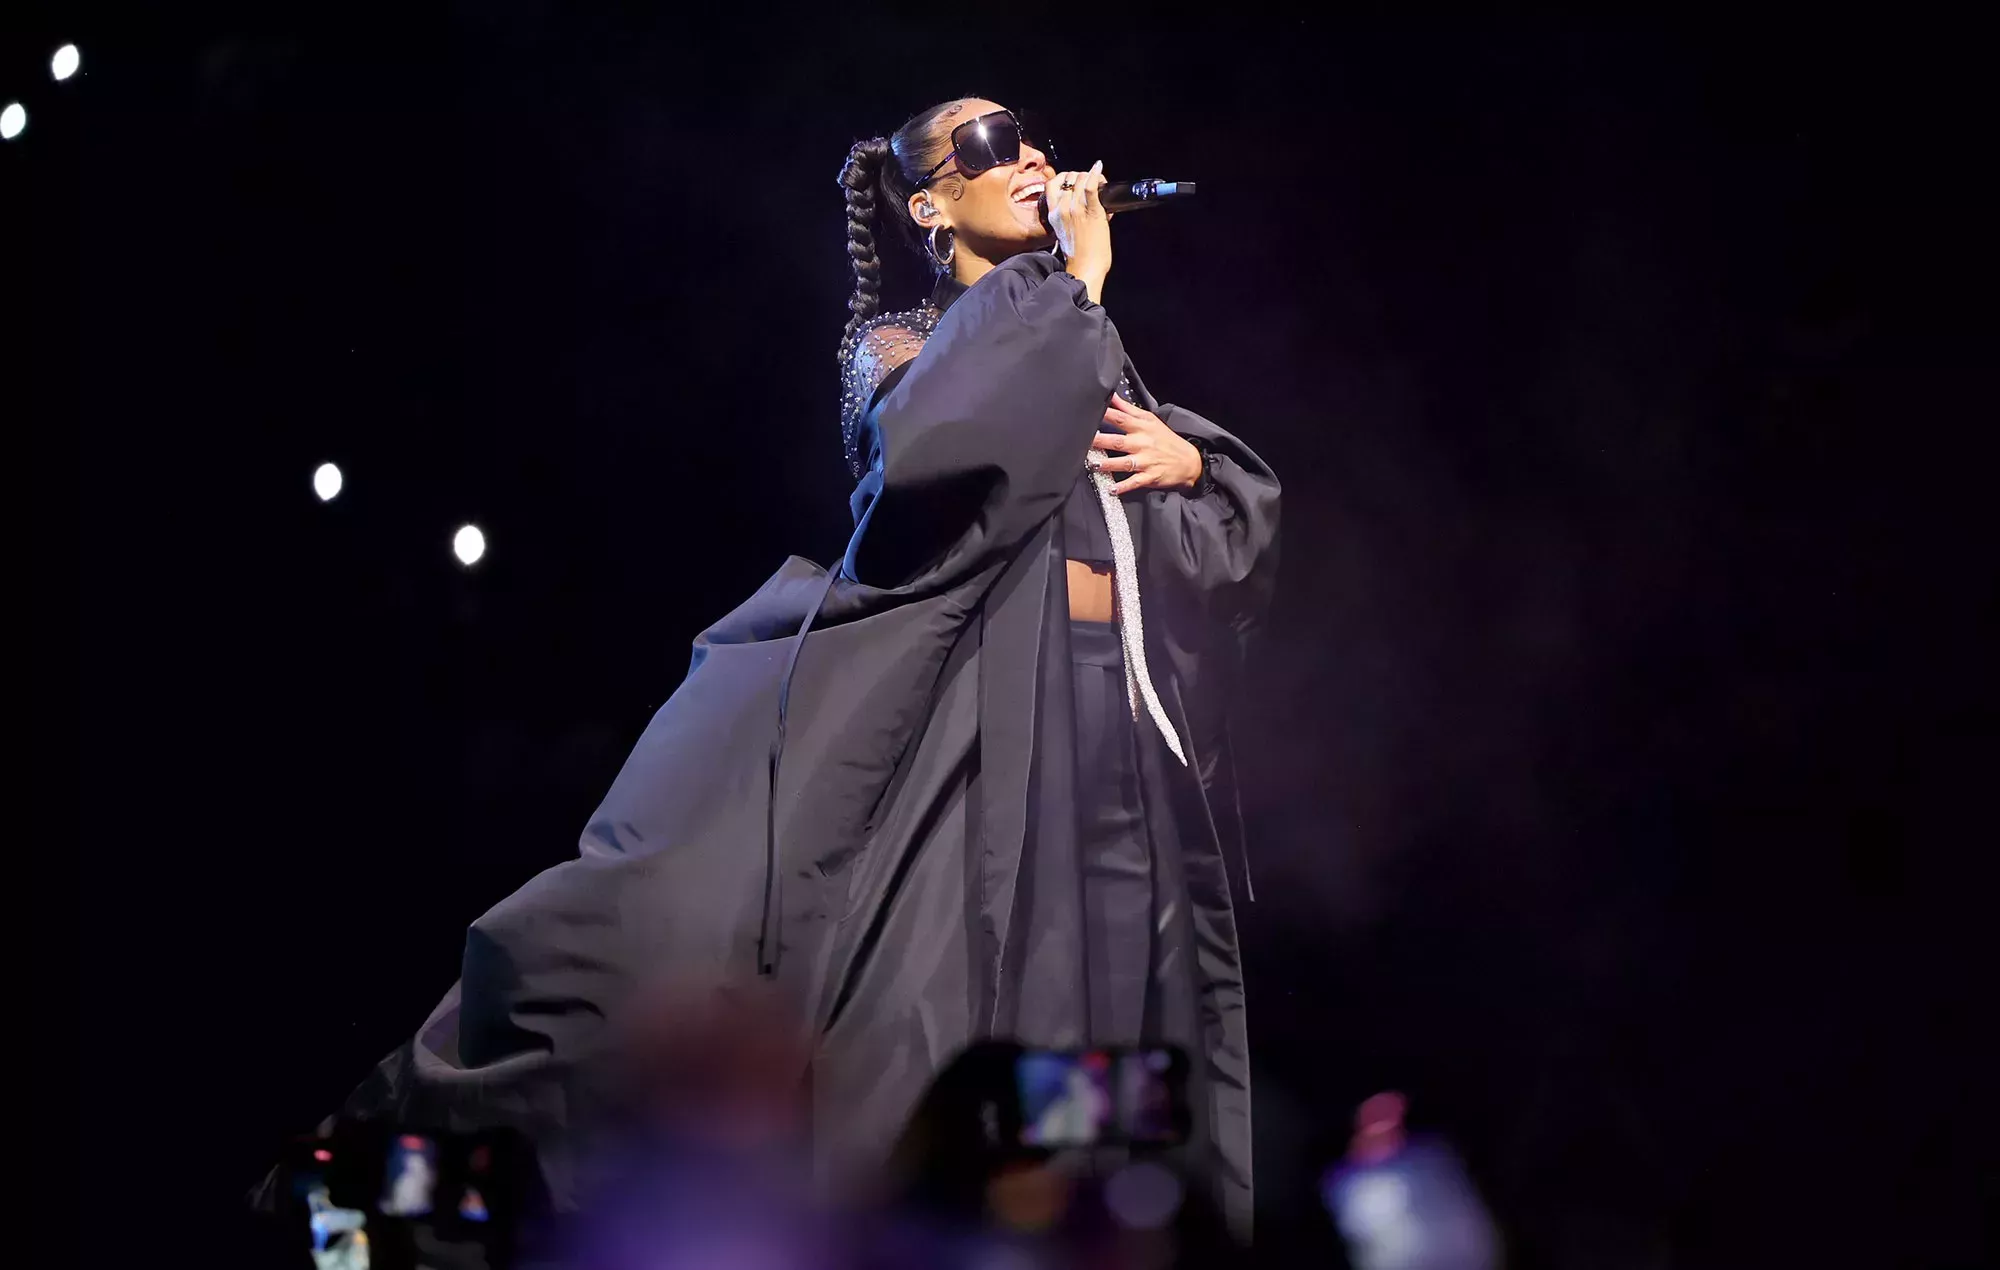 Alicia Keys niega intención antisemita con referencia a parapente en Instagram